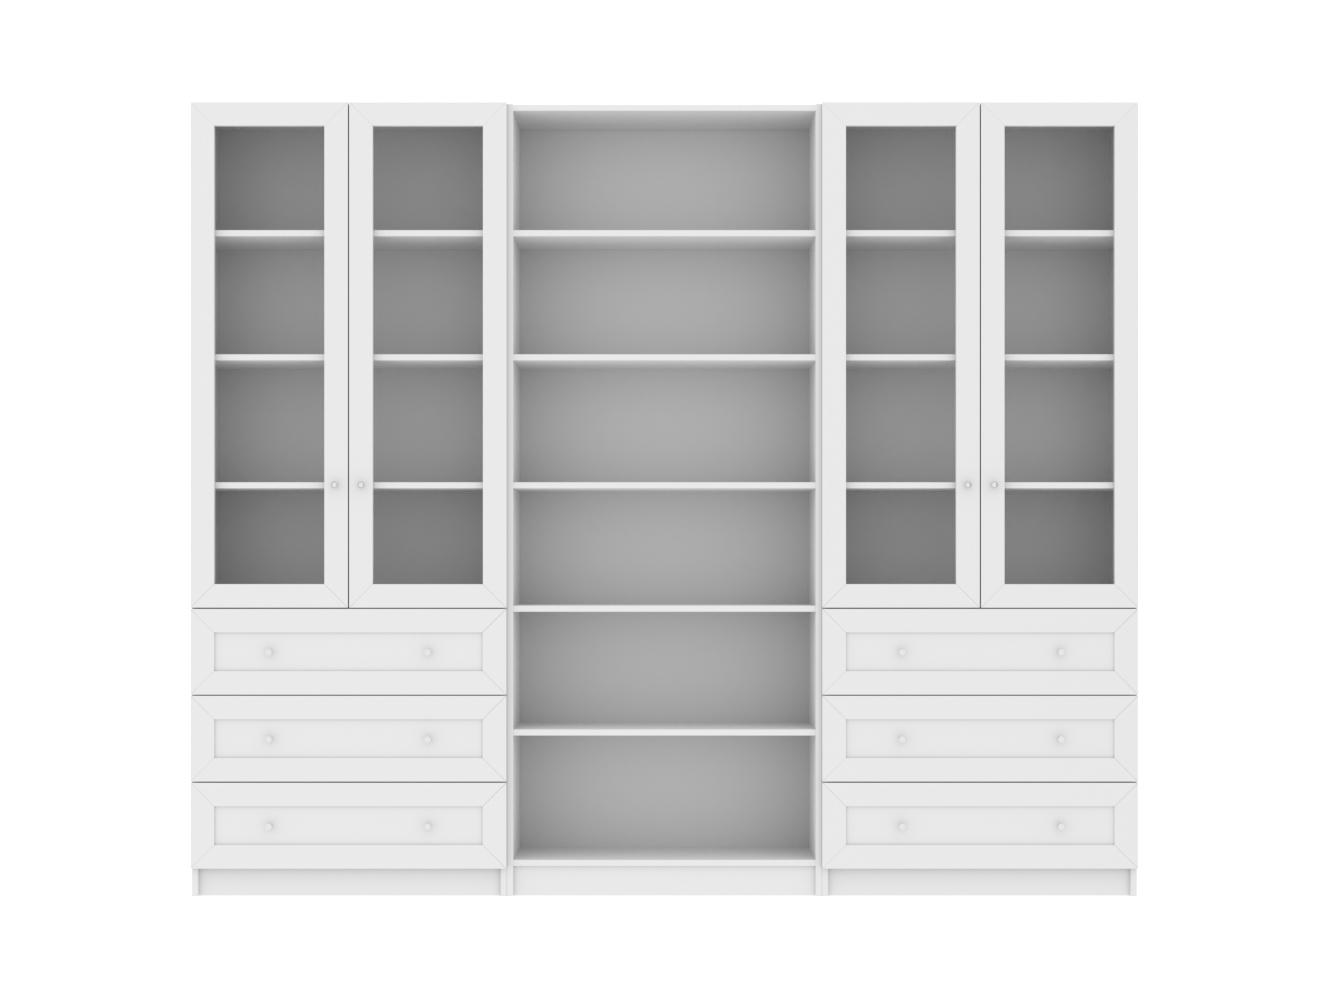 Изображение товара Книжный шкаф Билли 369 white ИКЕА (IKEA), 240x30x202 см на сайте adeta.ru